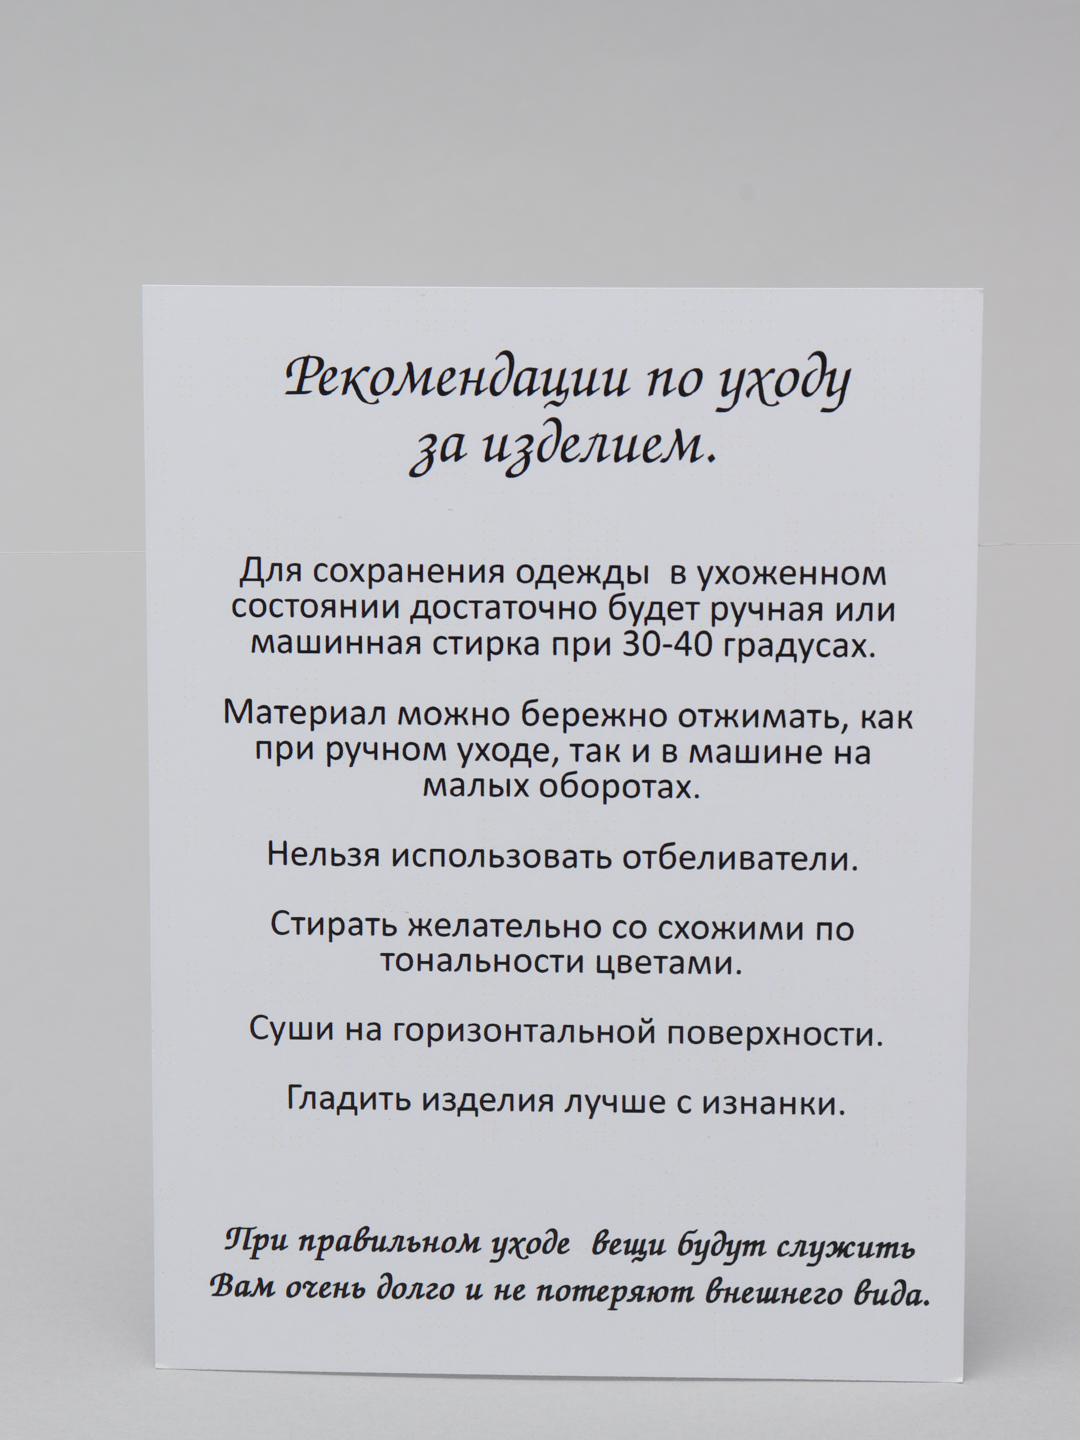 Уходяуходи - Анимационная картинка, открытка gif.